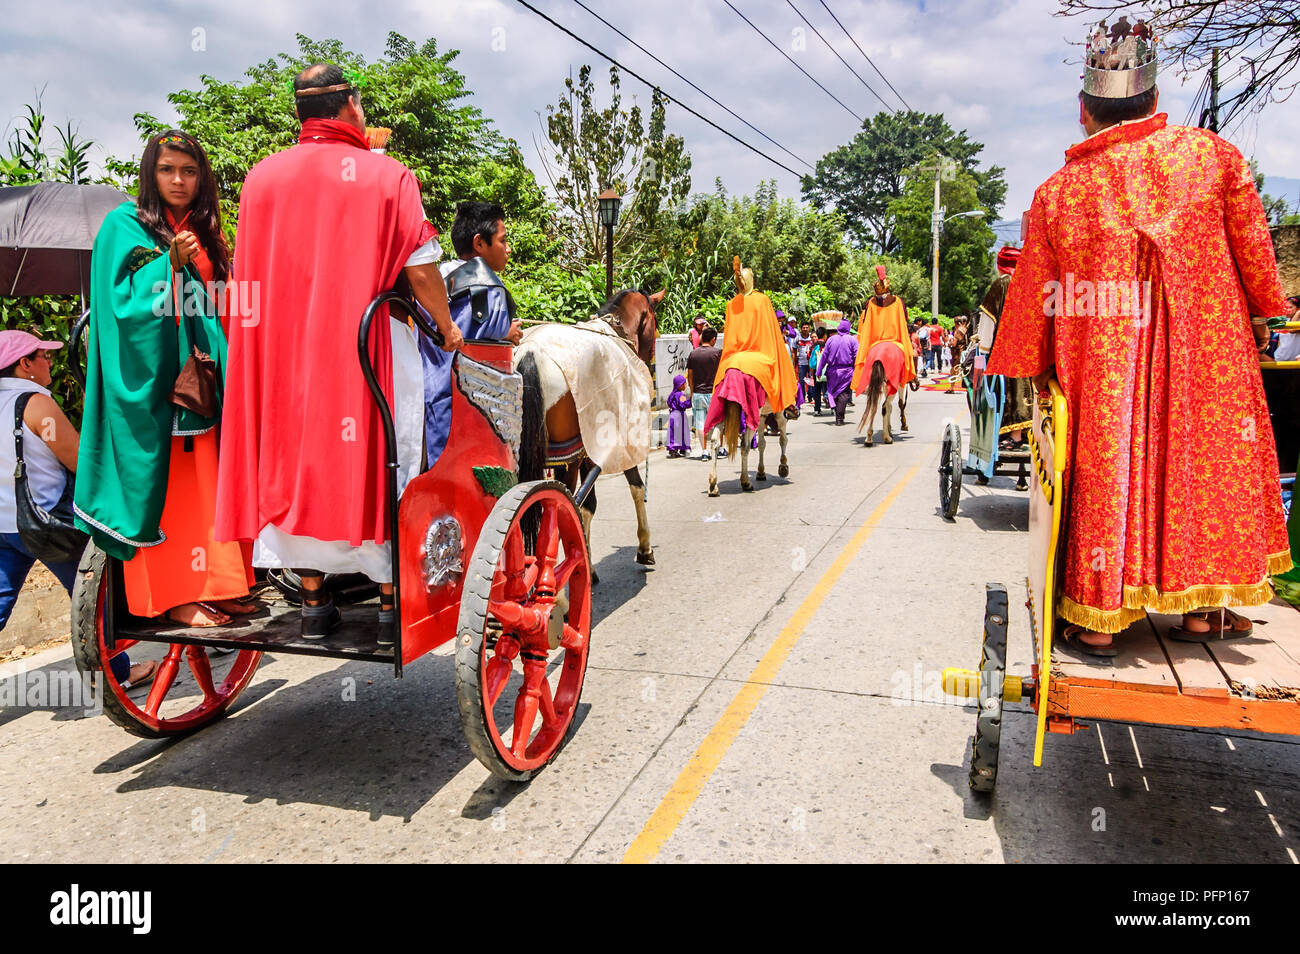 Antigua, Guatemala - April 2, 2015: Römer in Gründonnerstag Prozession im UNESCO Weltkulturerbe mit berühmten Heiligen Woche feiern. Stockfoto